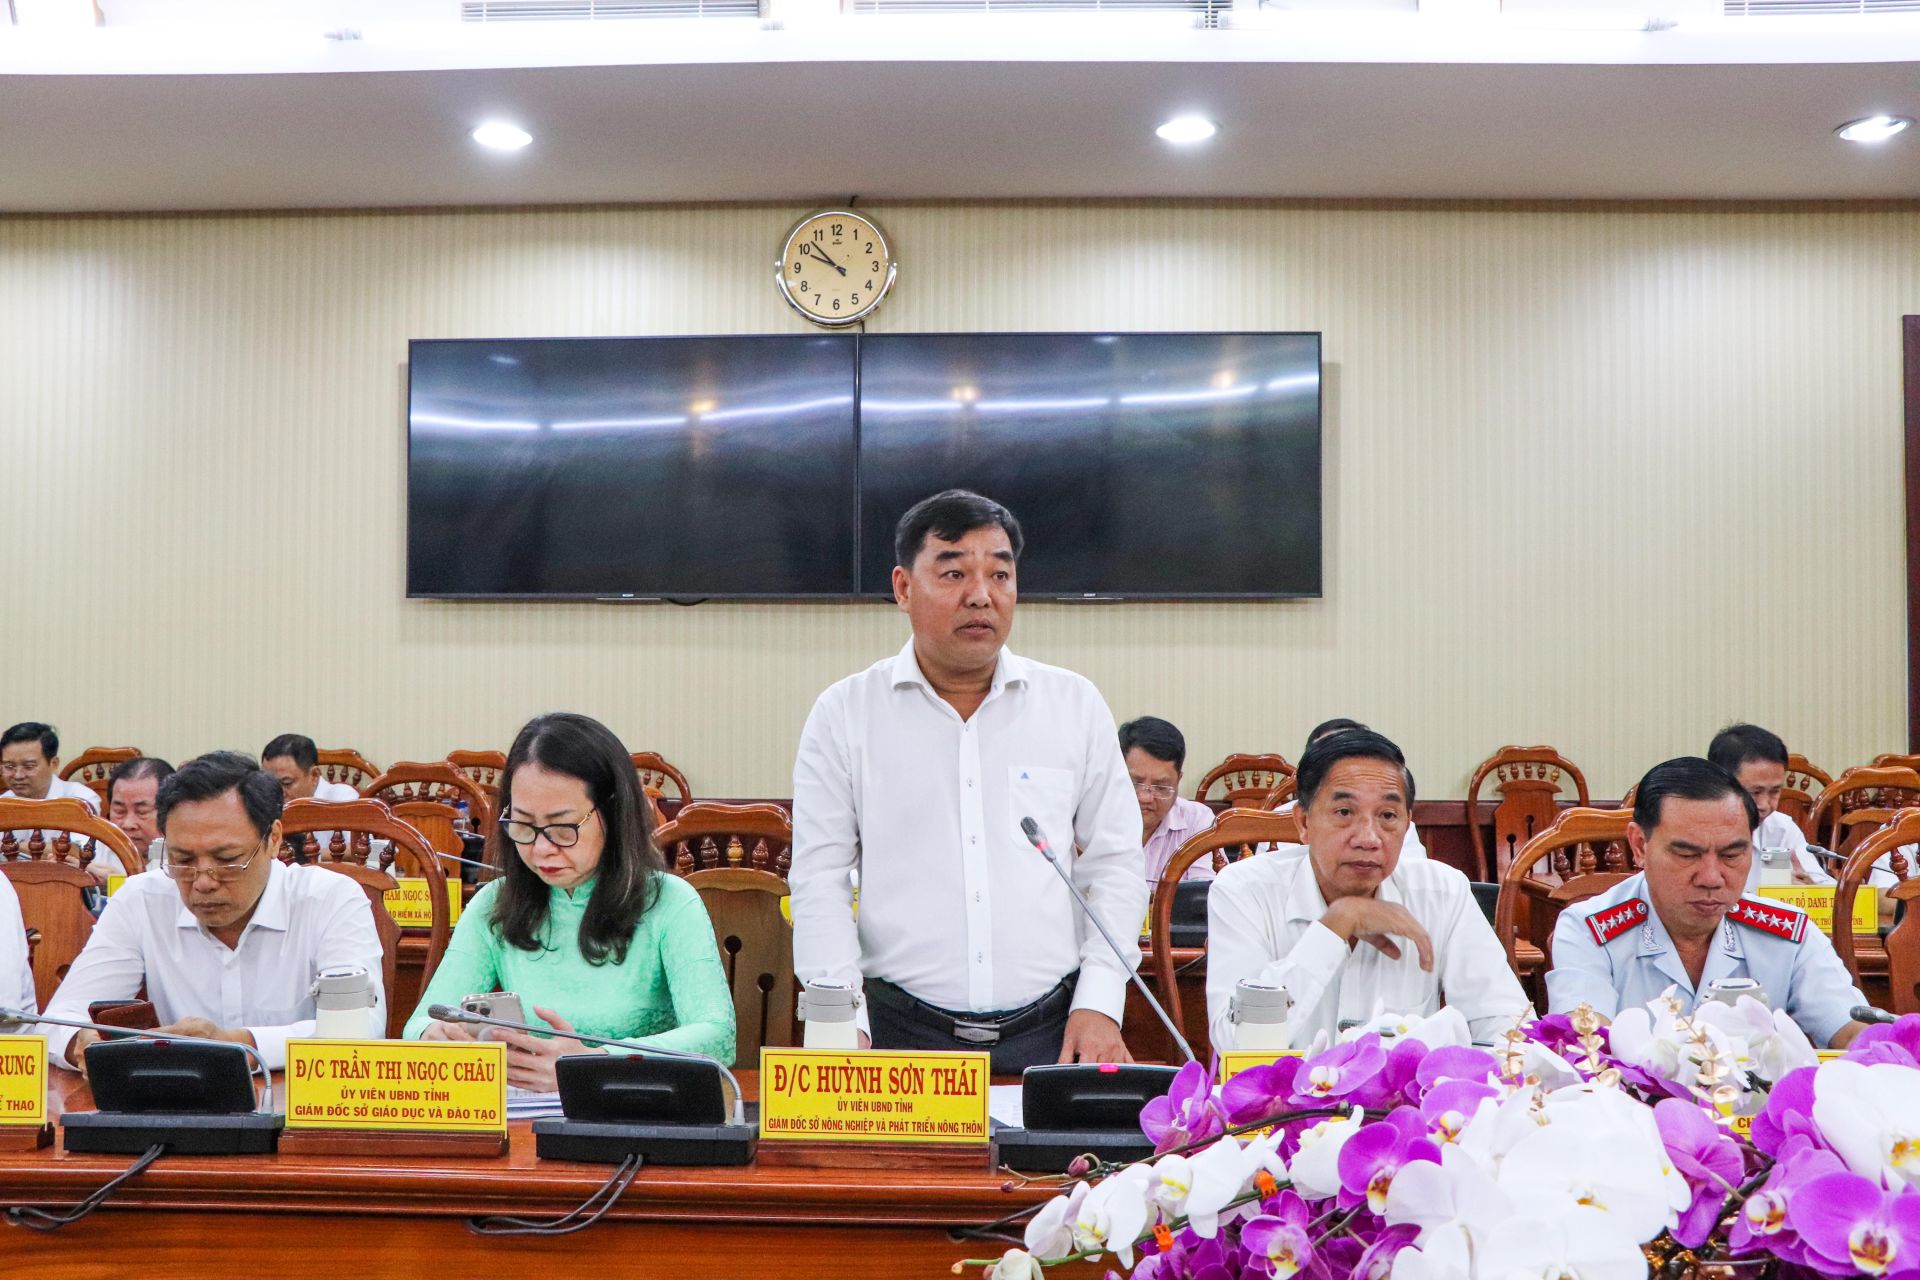 Ông Huỳnh Sơn Thái, Giám đốc Sở NN-PTNT tỉnh phát biểu ý kiến về nâng cao chất lượng các tiêu chí xây dựng xã nông thôn mới, huyện nông thôn mới; tình hình sản xuất nông nghiệp trên địa bàn tỉnh